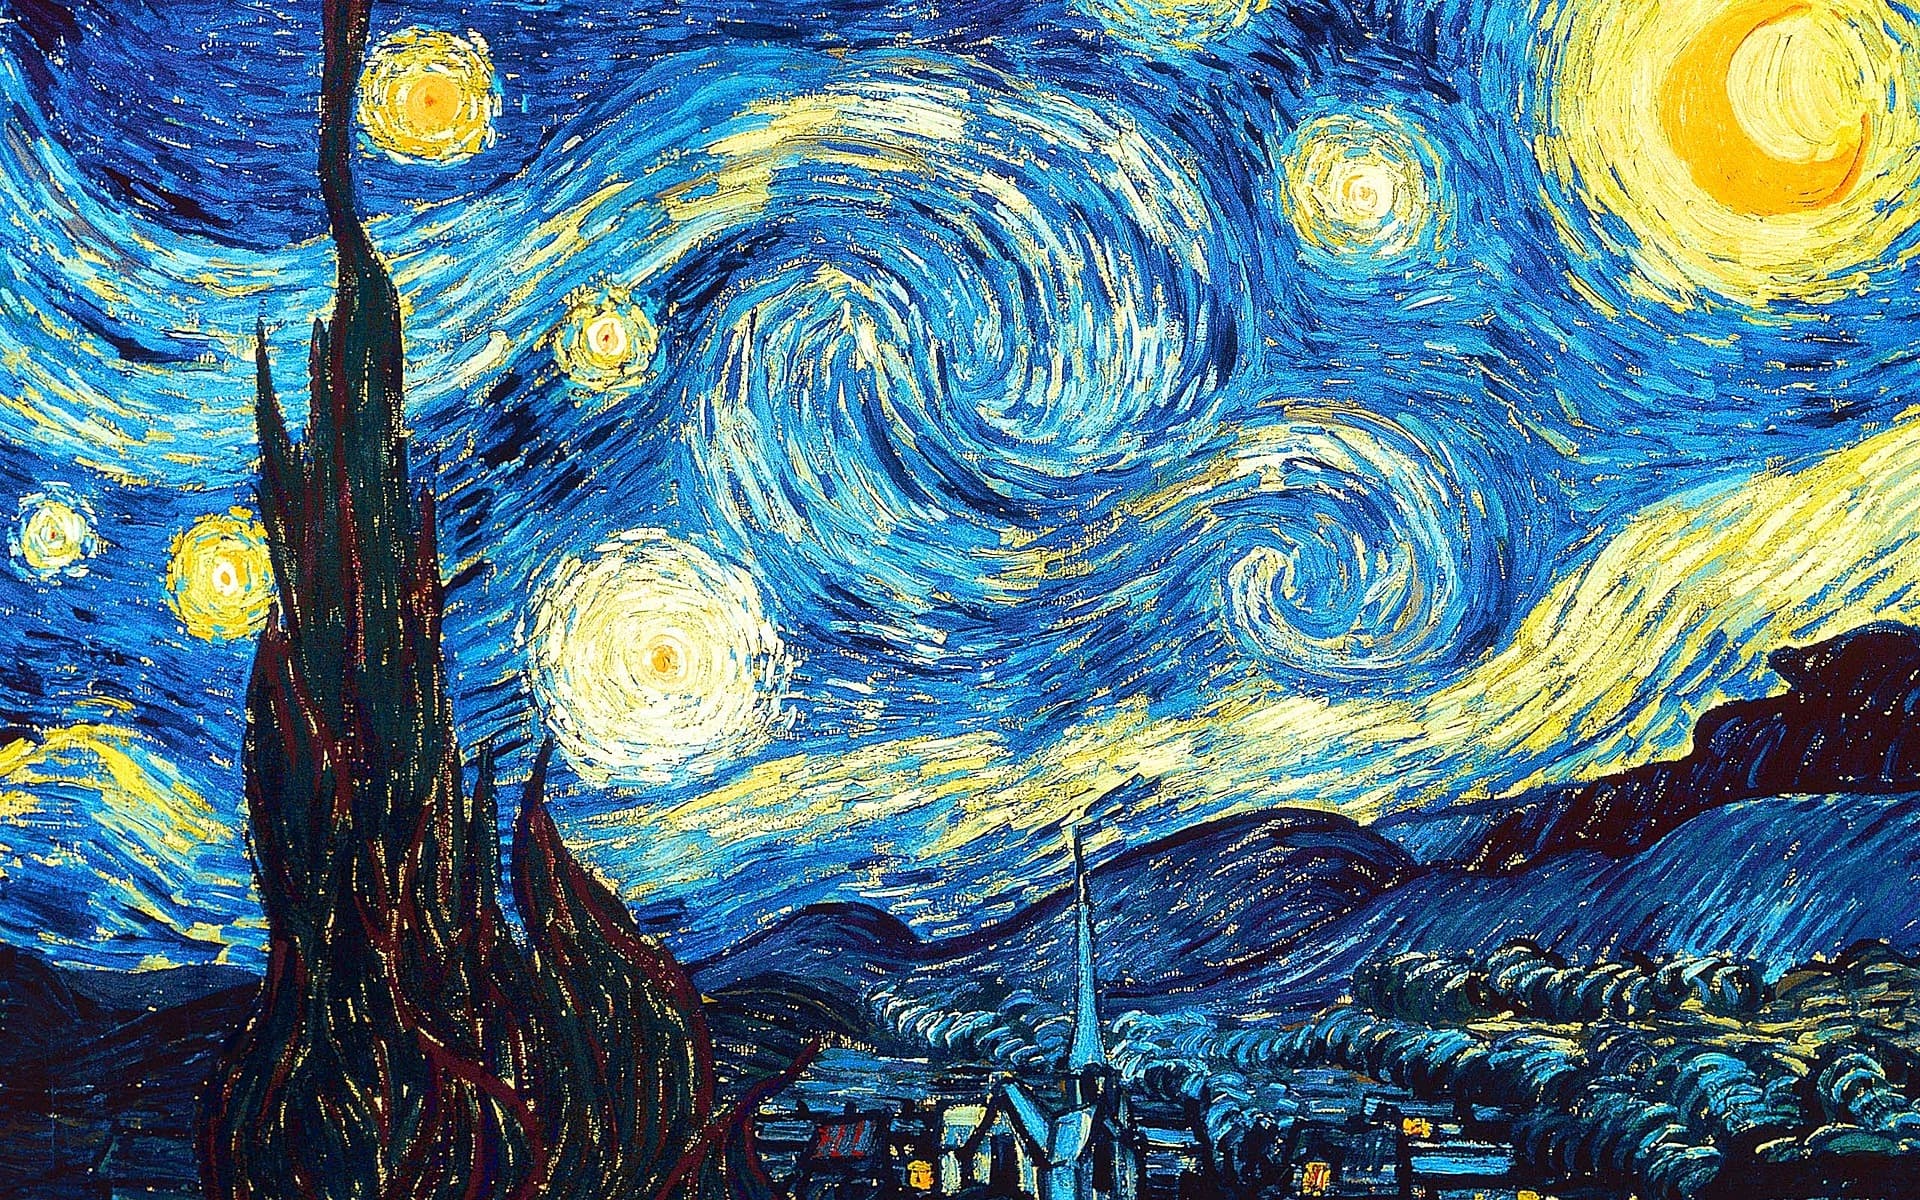 Si oyes una voz que te dice ‘no puedes pintar’, pinta y esa voz será silenciada  -Vincent Van Gogh